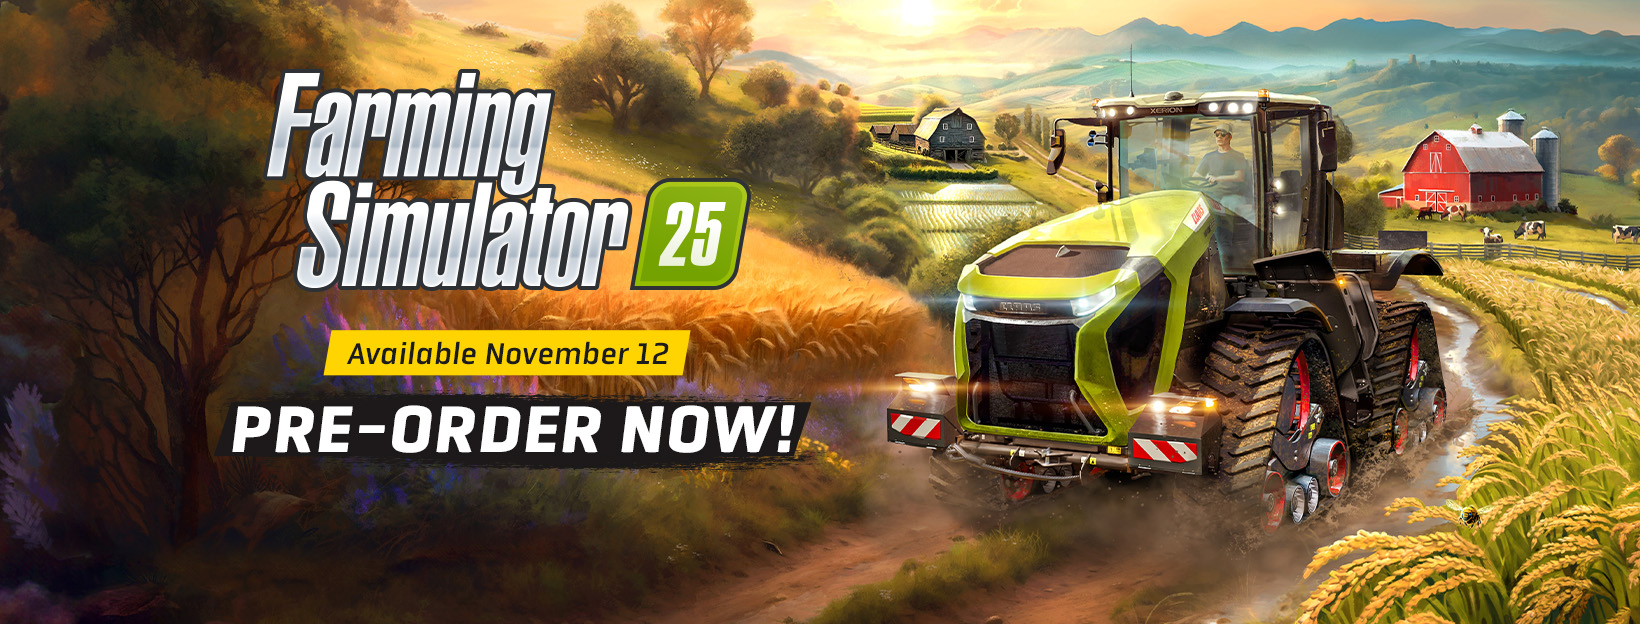 Der Farming Simulator 25 kommt!